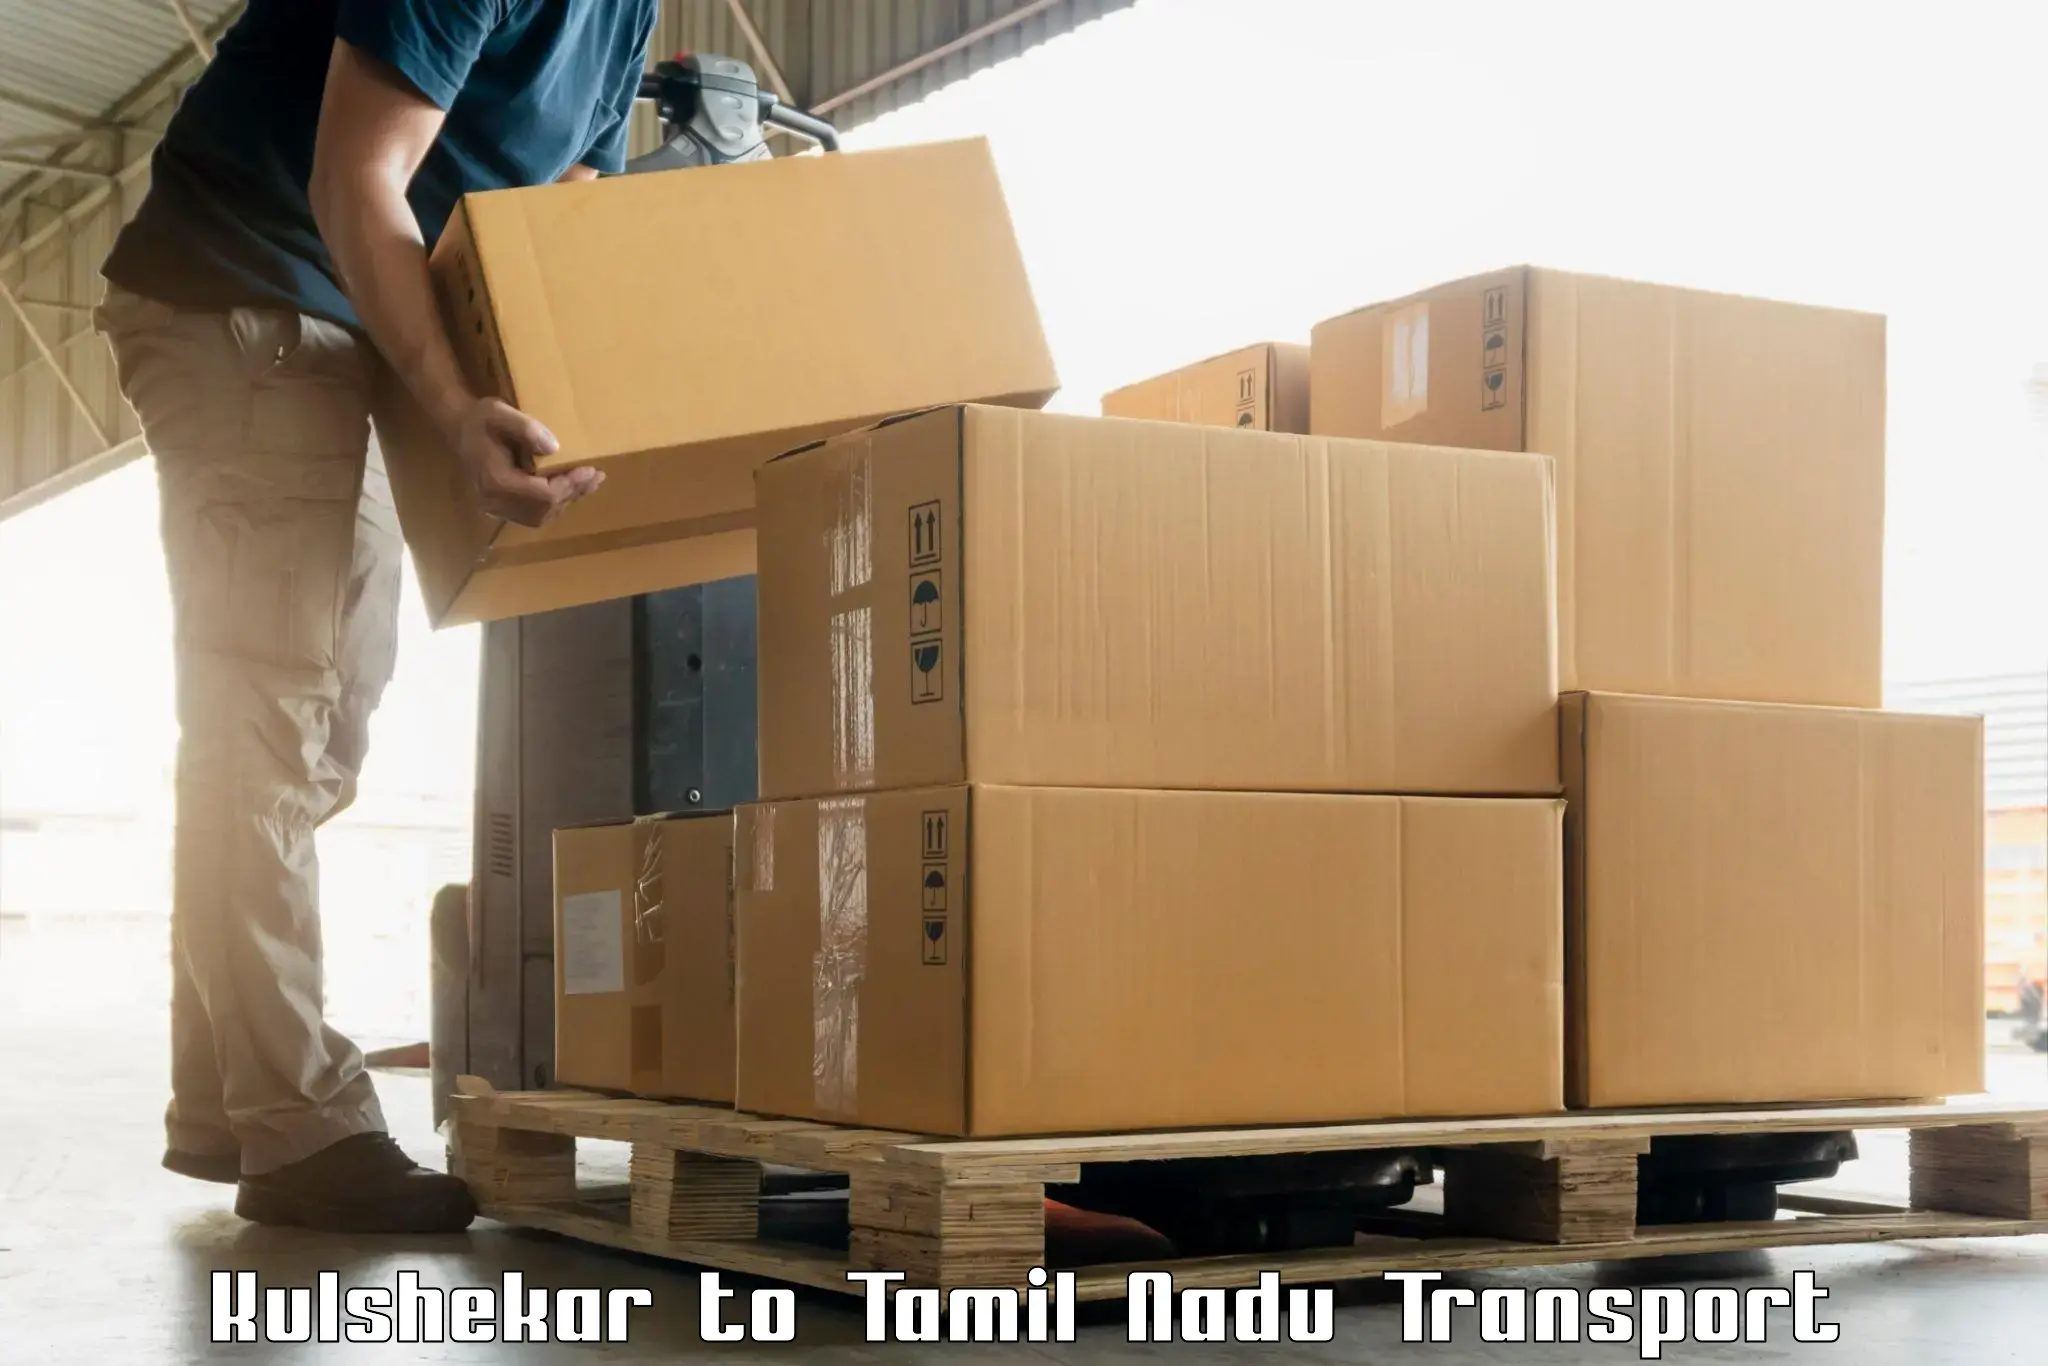 Land transport services Kulshekar to Tenkasi